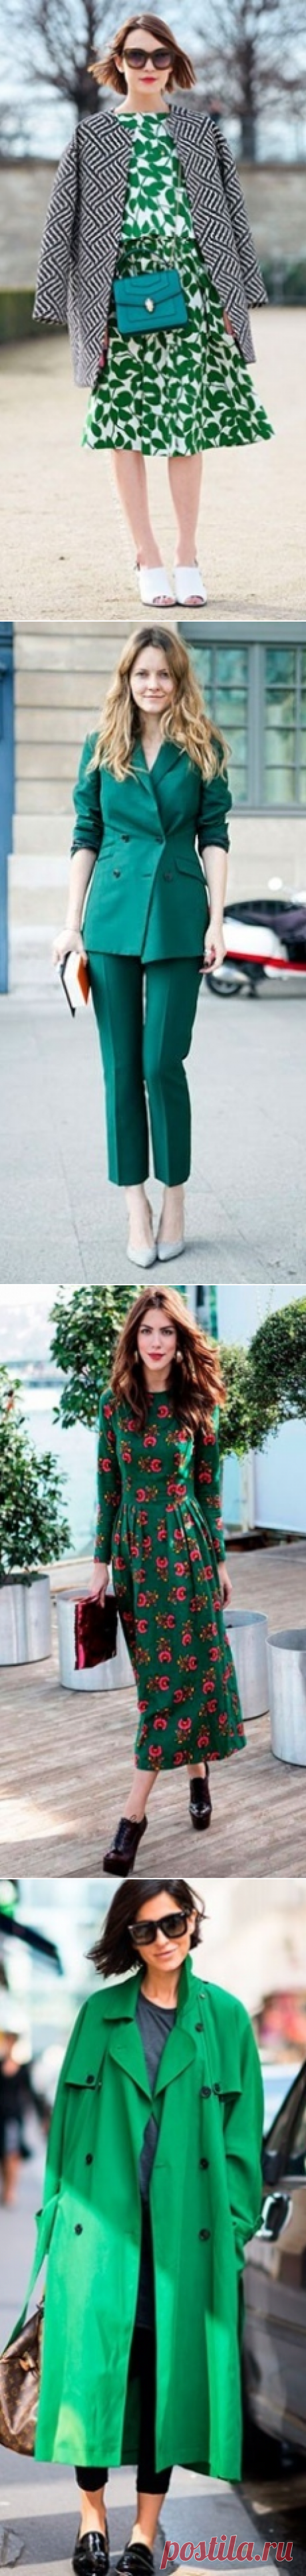 Оттенки зеленого - очень стильно и красиво — Модно / Nemodno